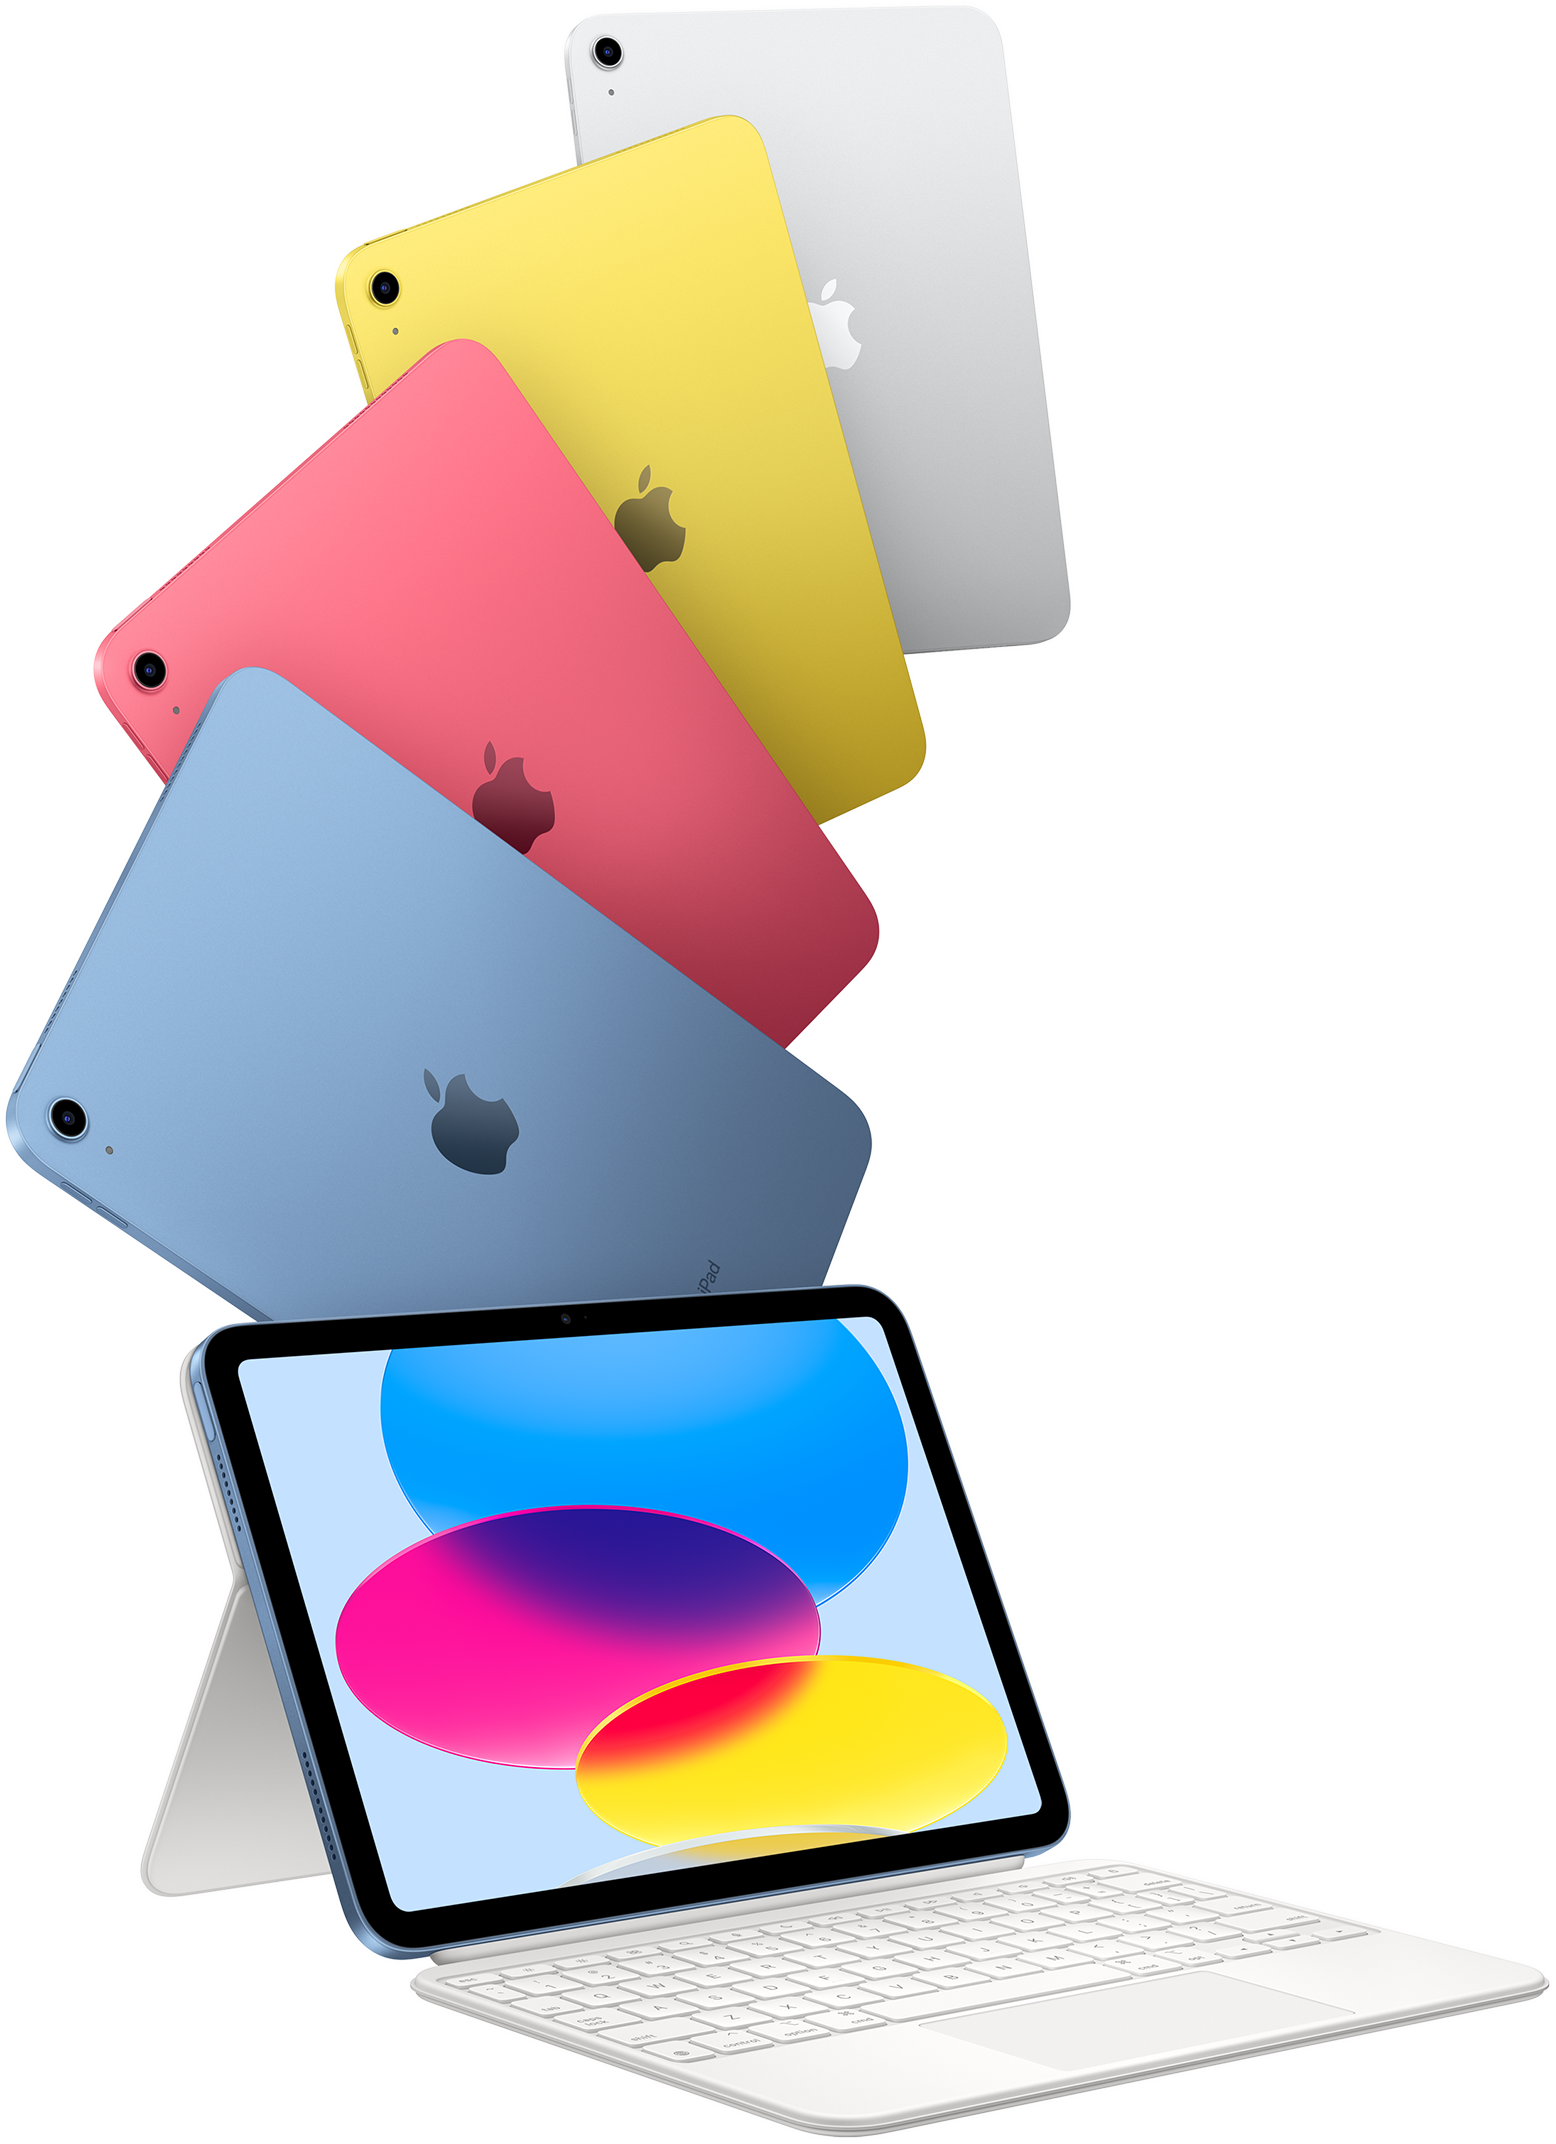 Modelos de iPad en azul, rosa, amarillo y color plata, y un iPad conectado a un Magic Keyboard Folio.